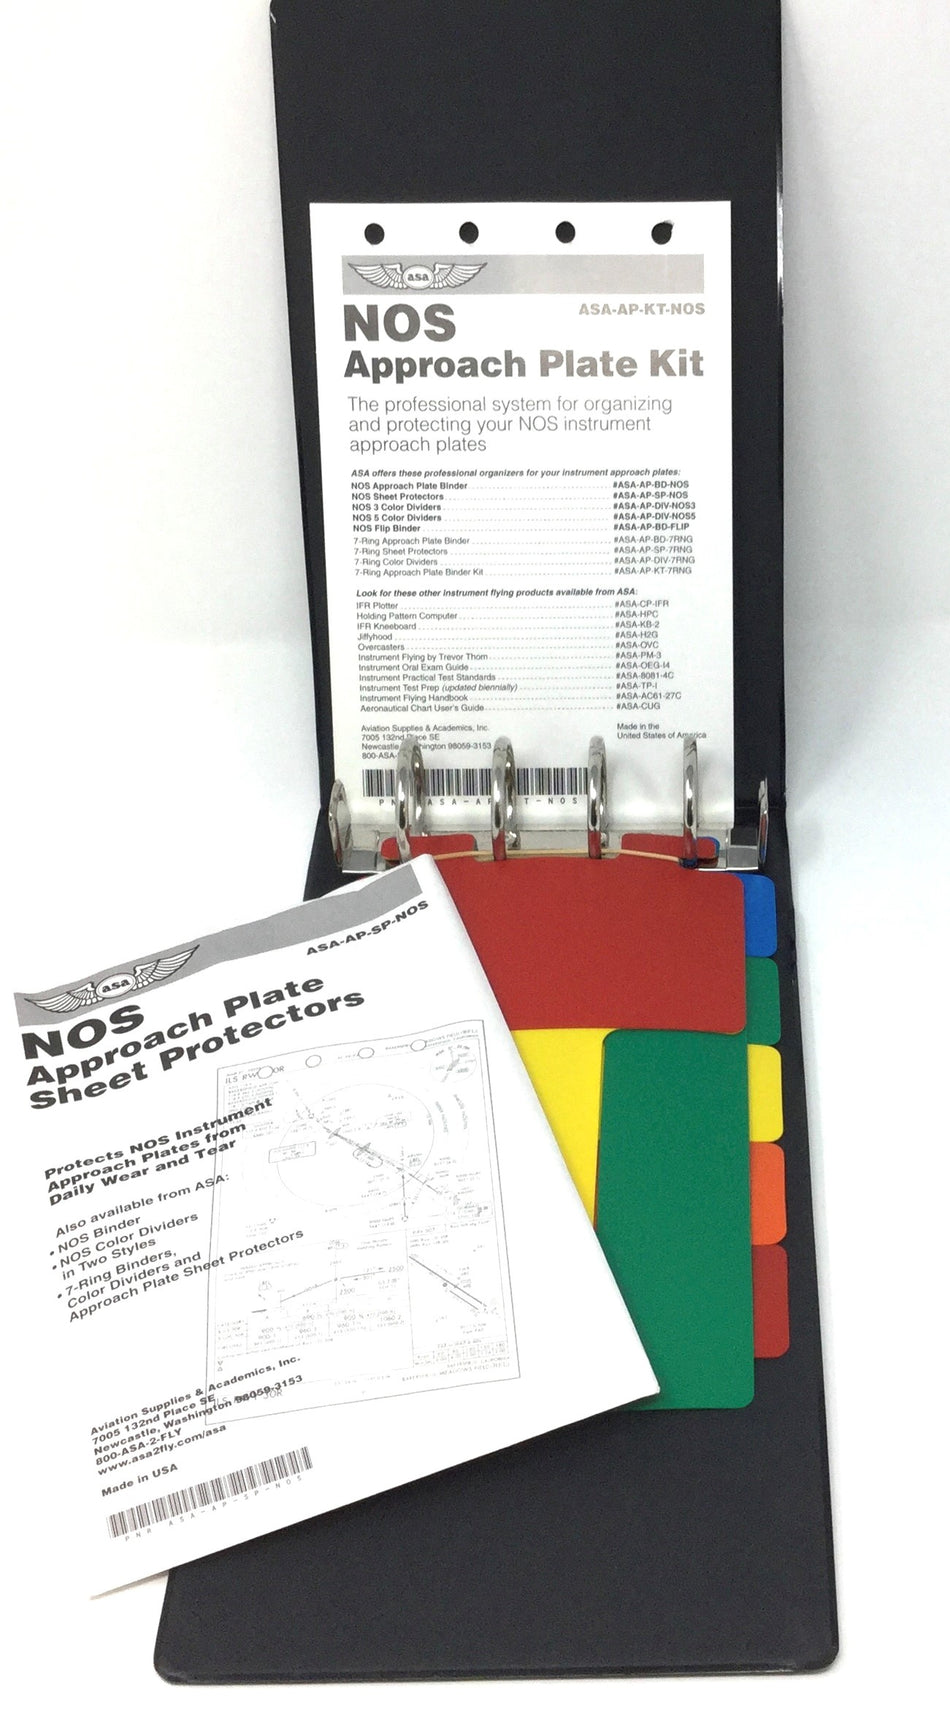 ASA NOS Instrument Approach Plate Kit